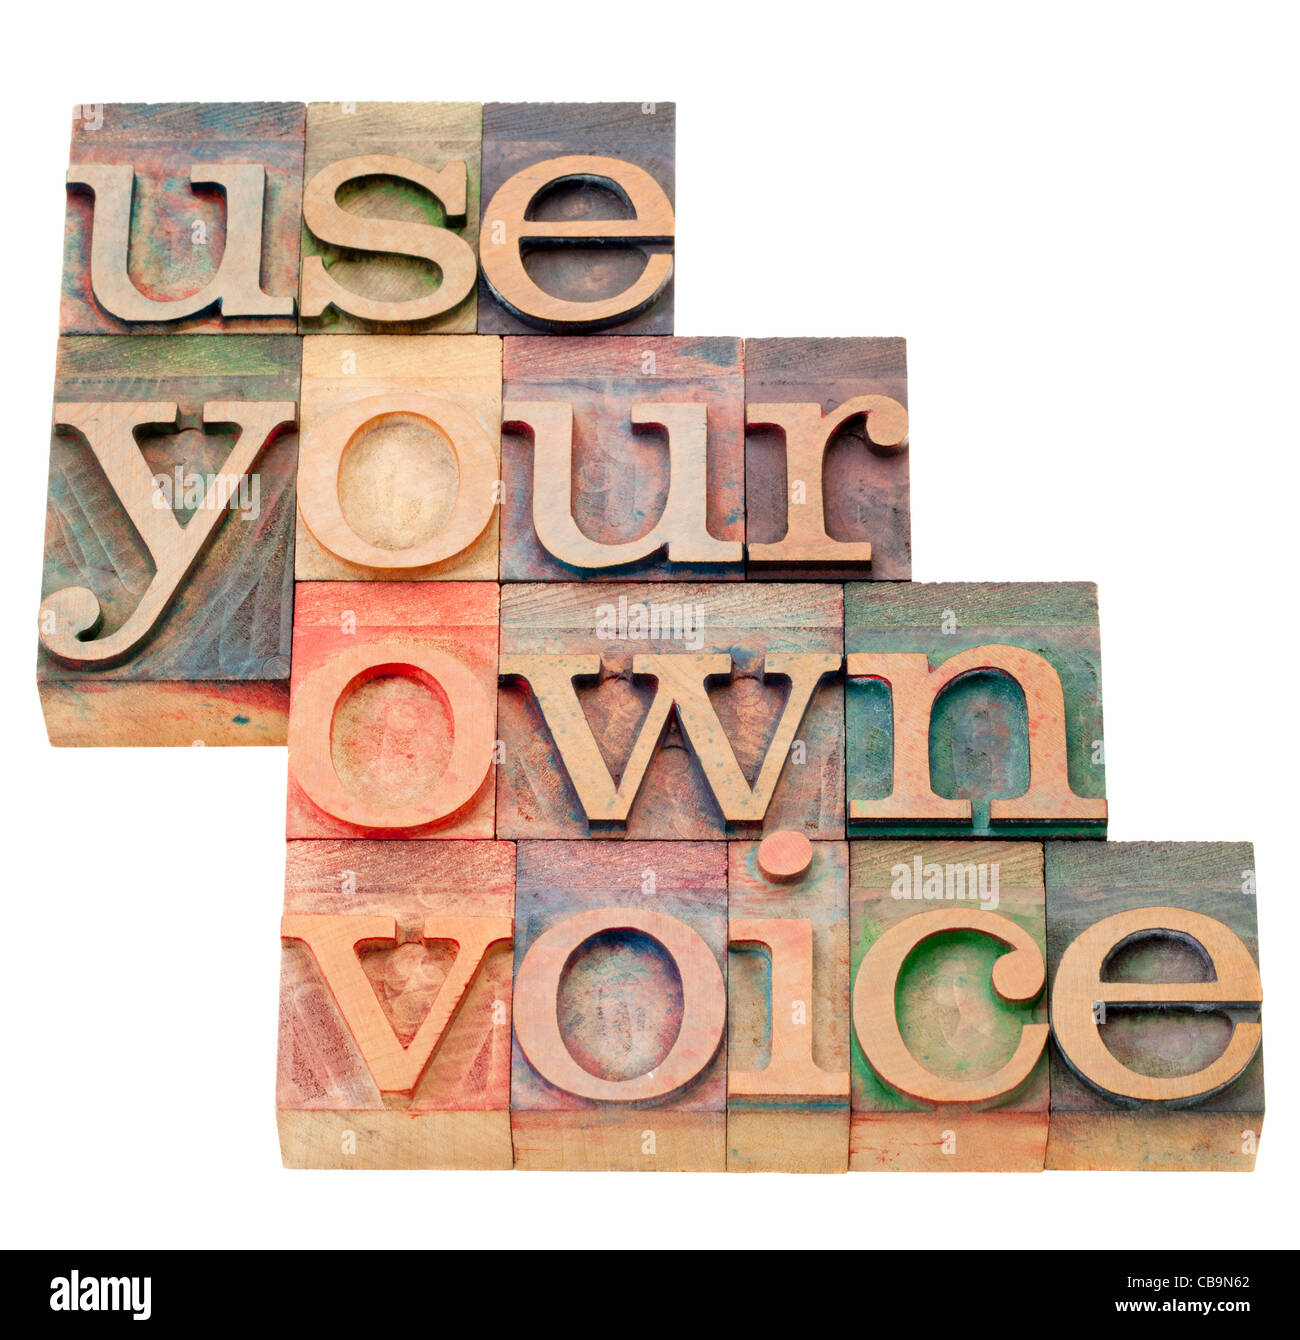 Verwenden Sie Ihre eigene Stimme Beratung - isolierten Text in Vintage Holz Buchdruck Druckstöcke Stockfoto